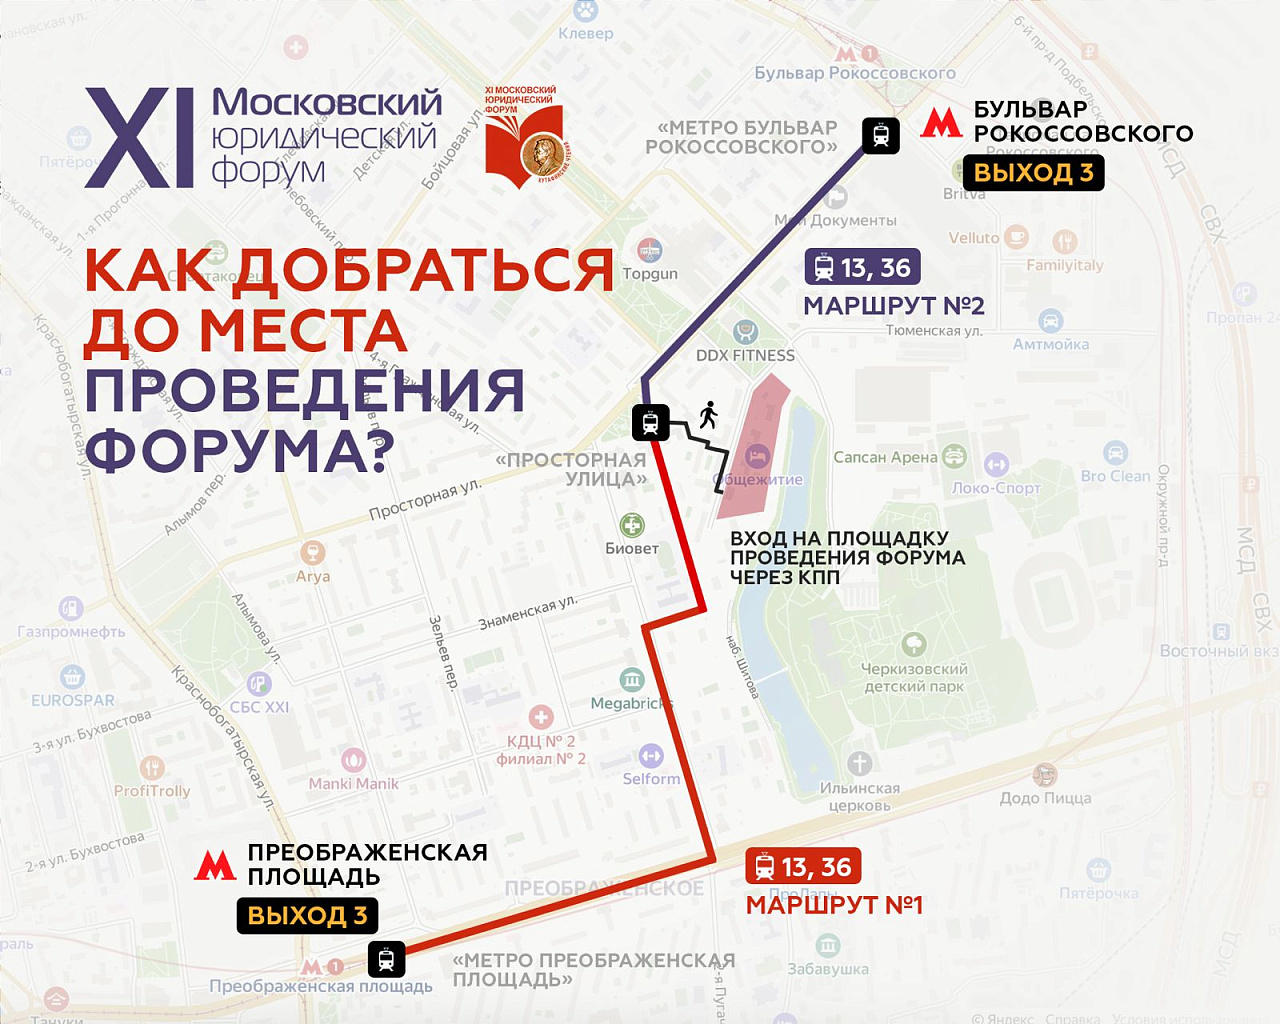 Схема проезда к месту проведения пленарного заседания XI Московского юридического форума